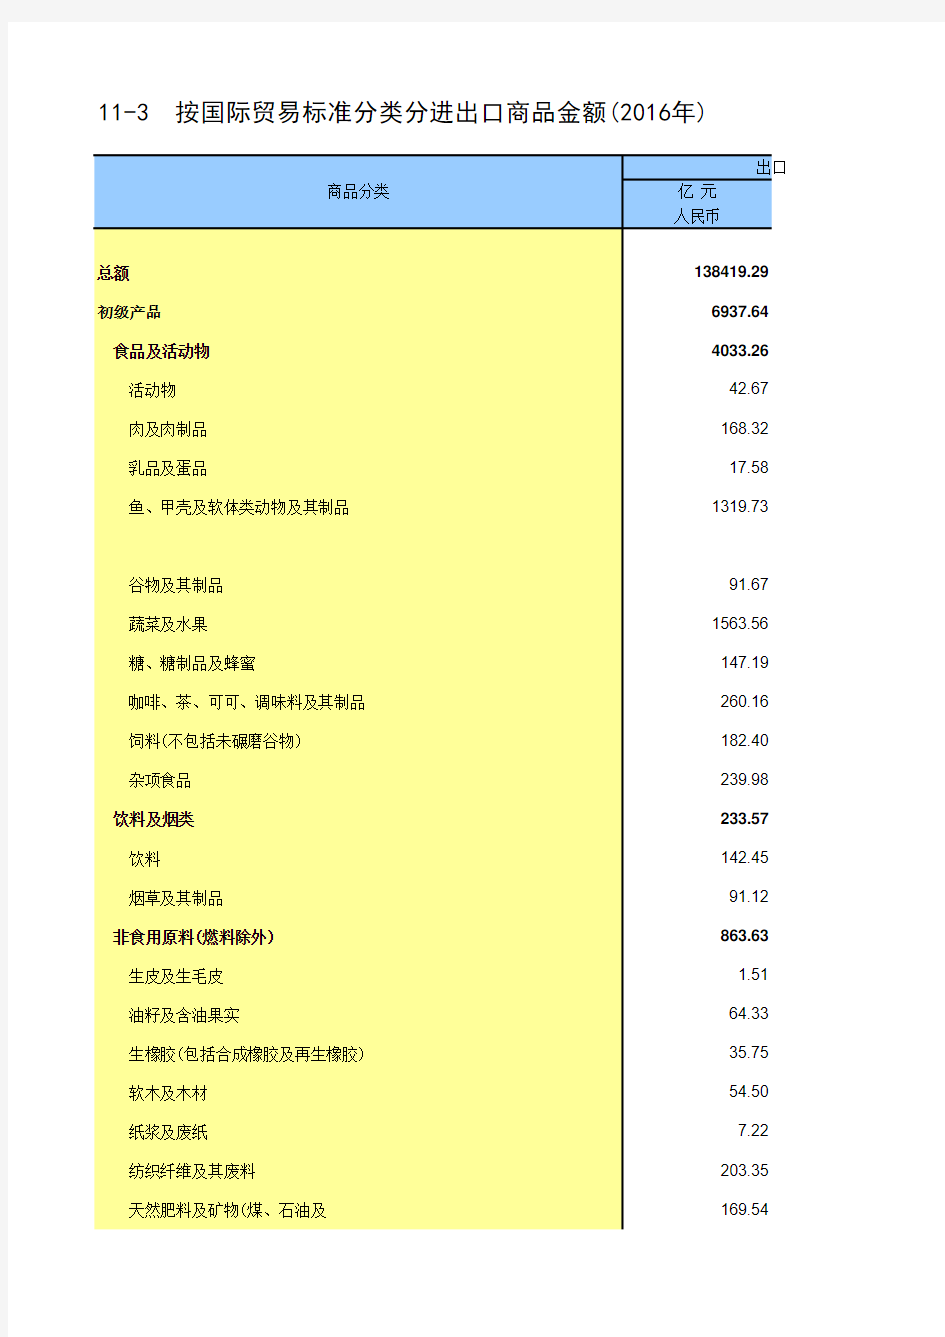 中国统计年鉴2017全国各省市区社会经济发展指标：按国际贸易标准分类分进出口商品金额(2016年)